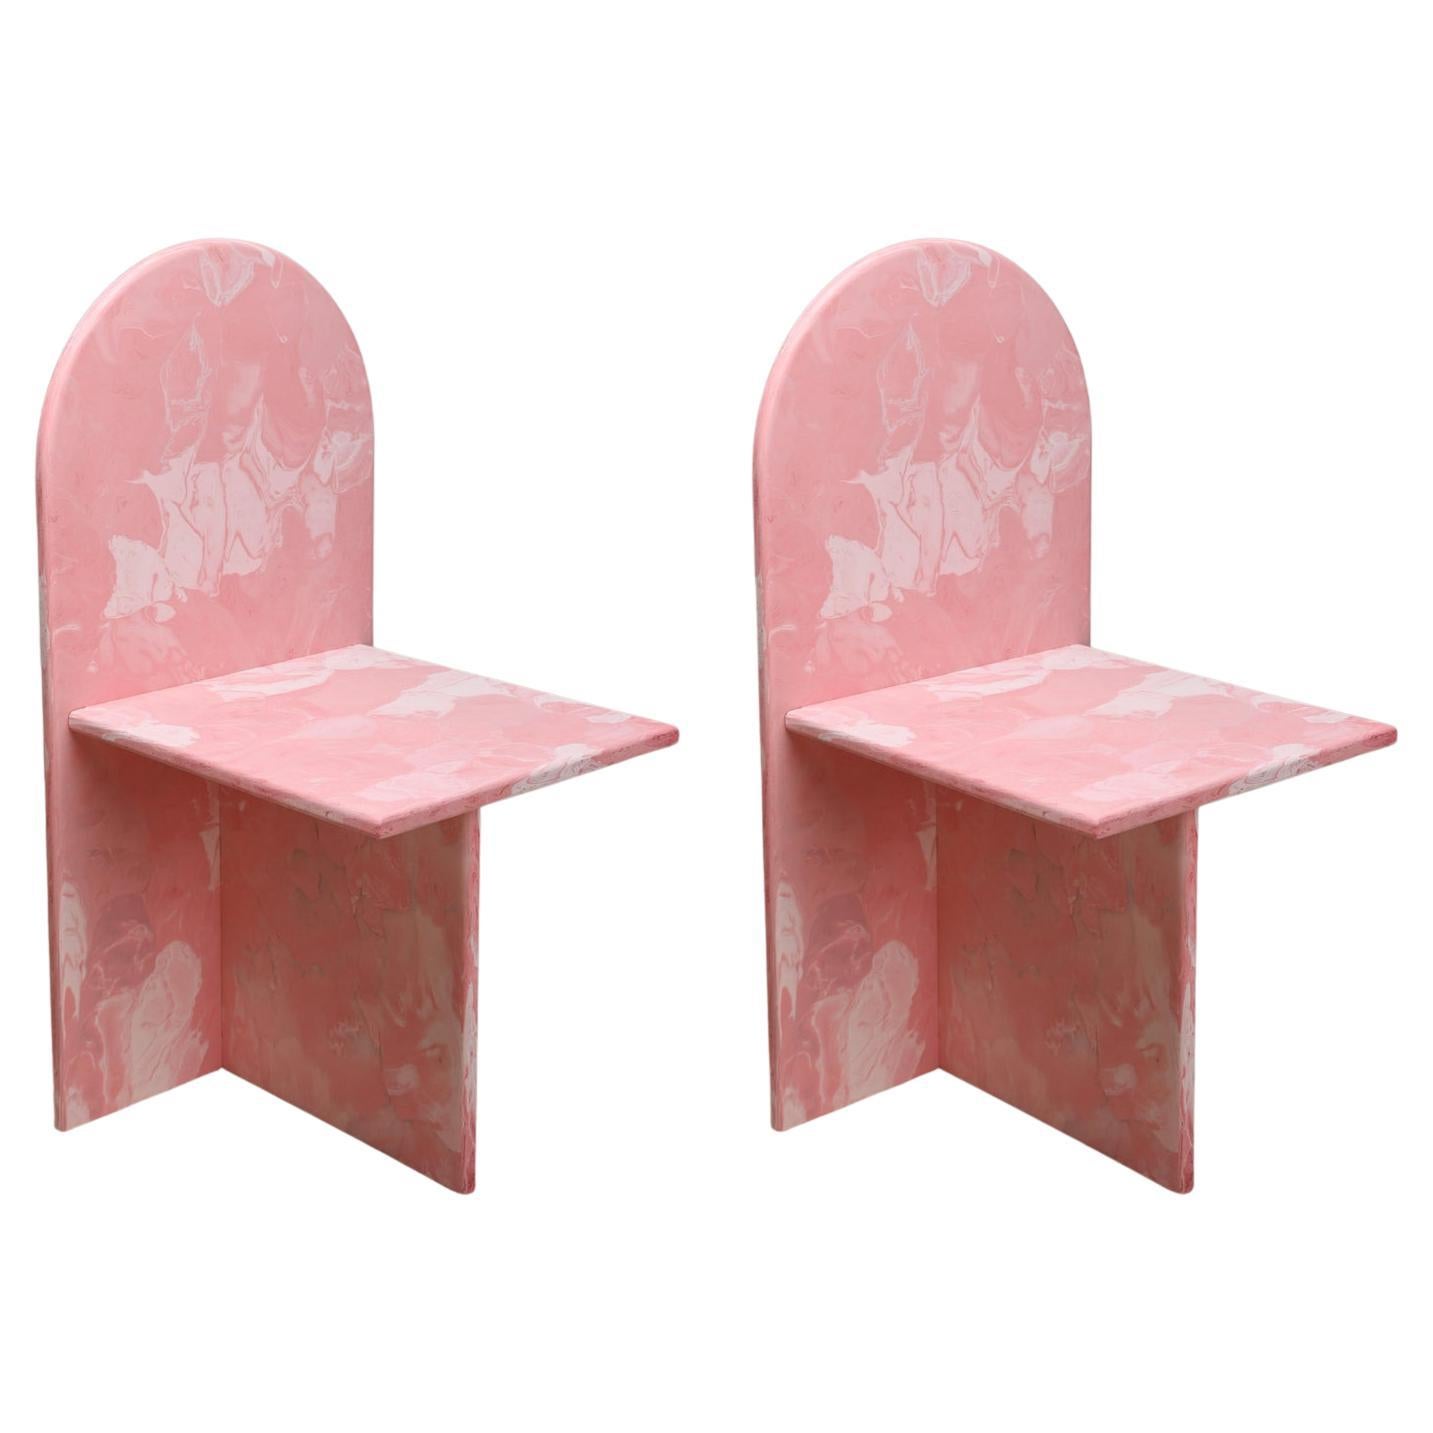 2 chaises contemporaines en plastique 100 % recyclé rose fabriquées à la main par Anqa Studios